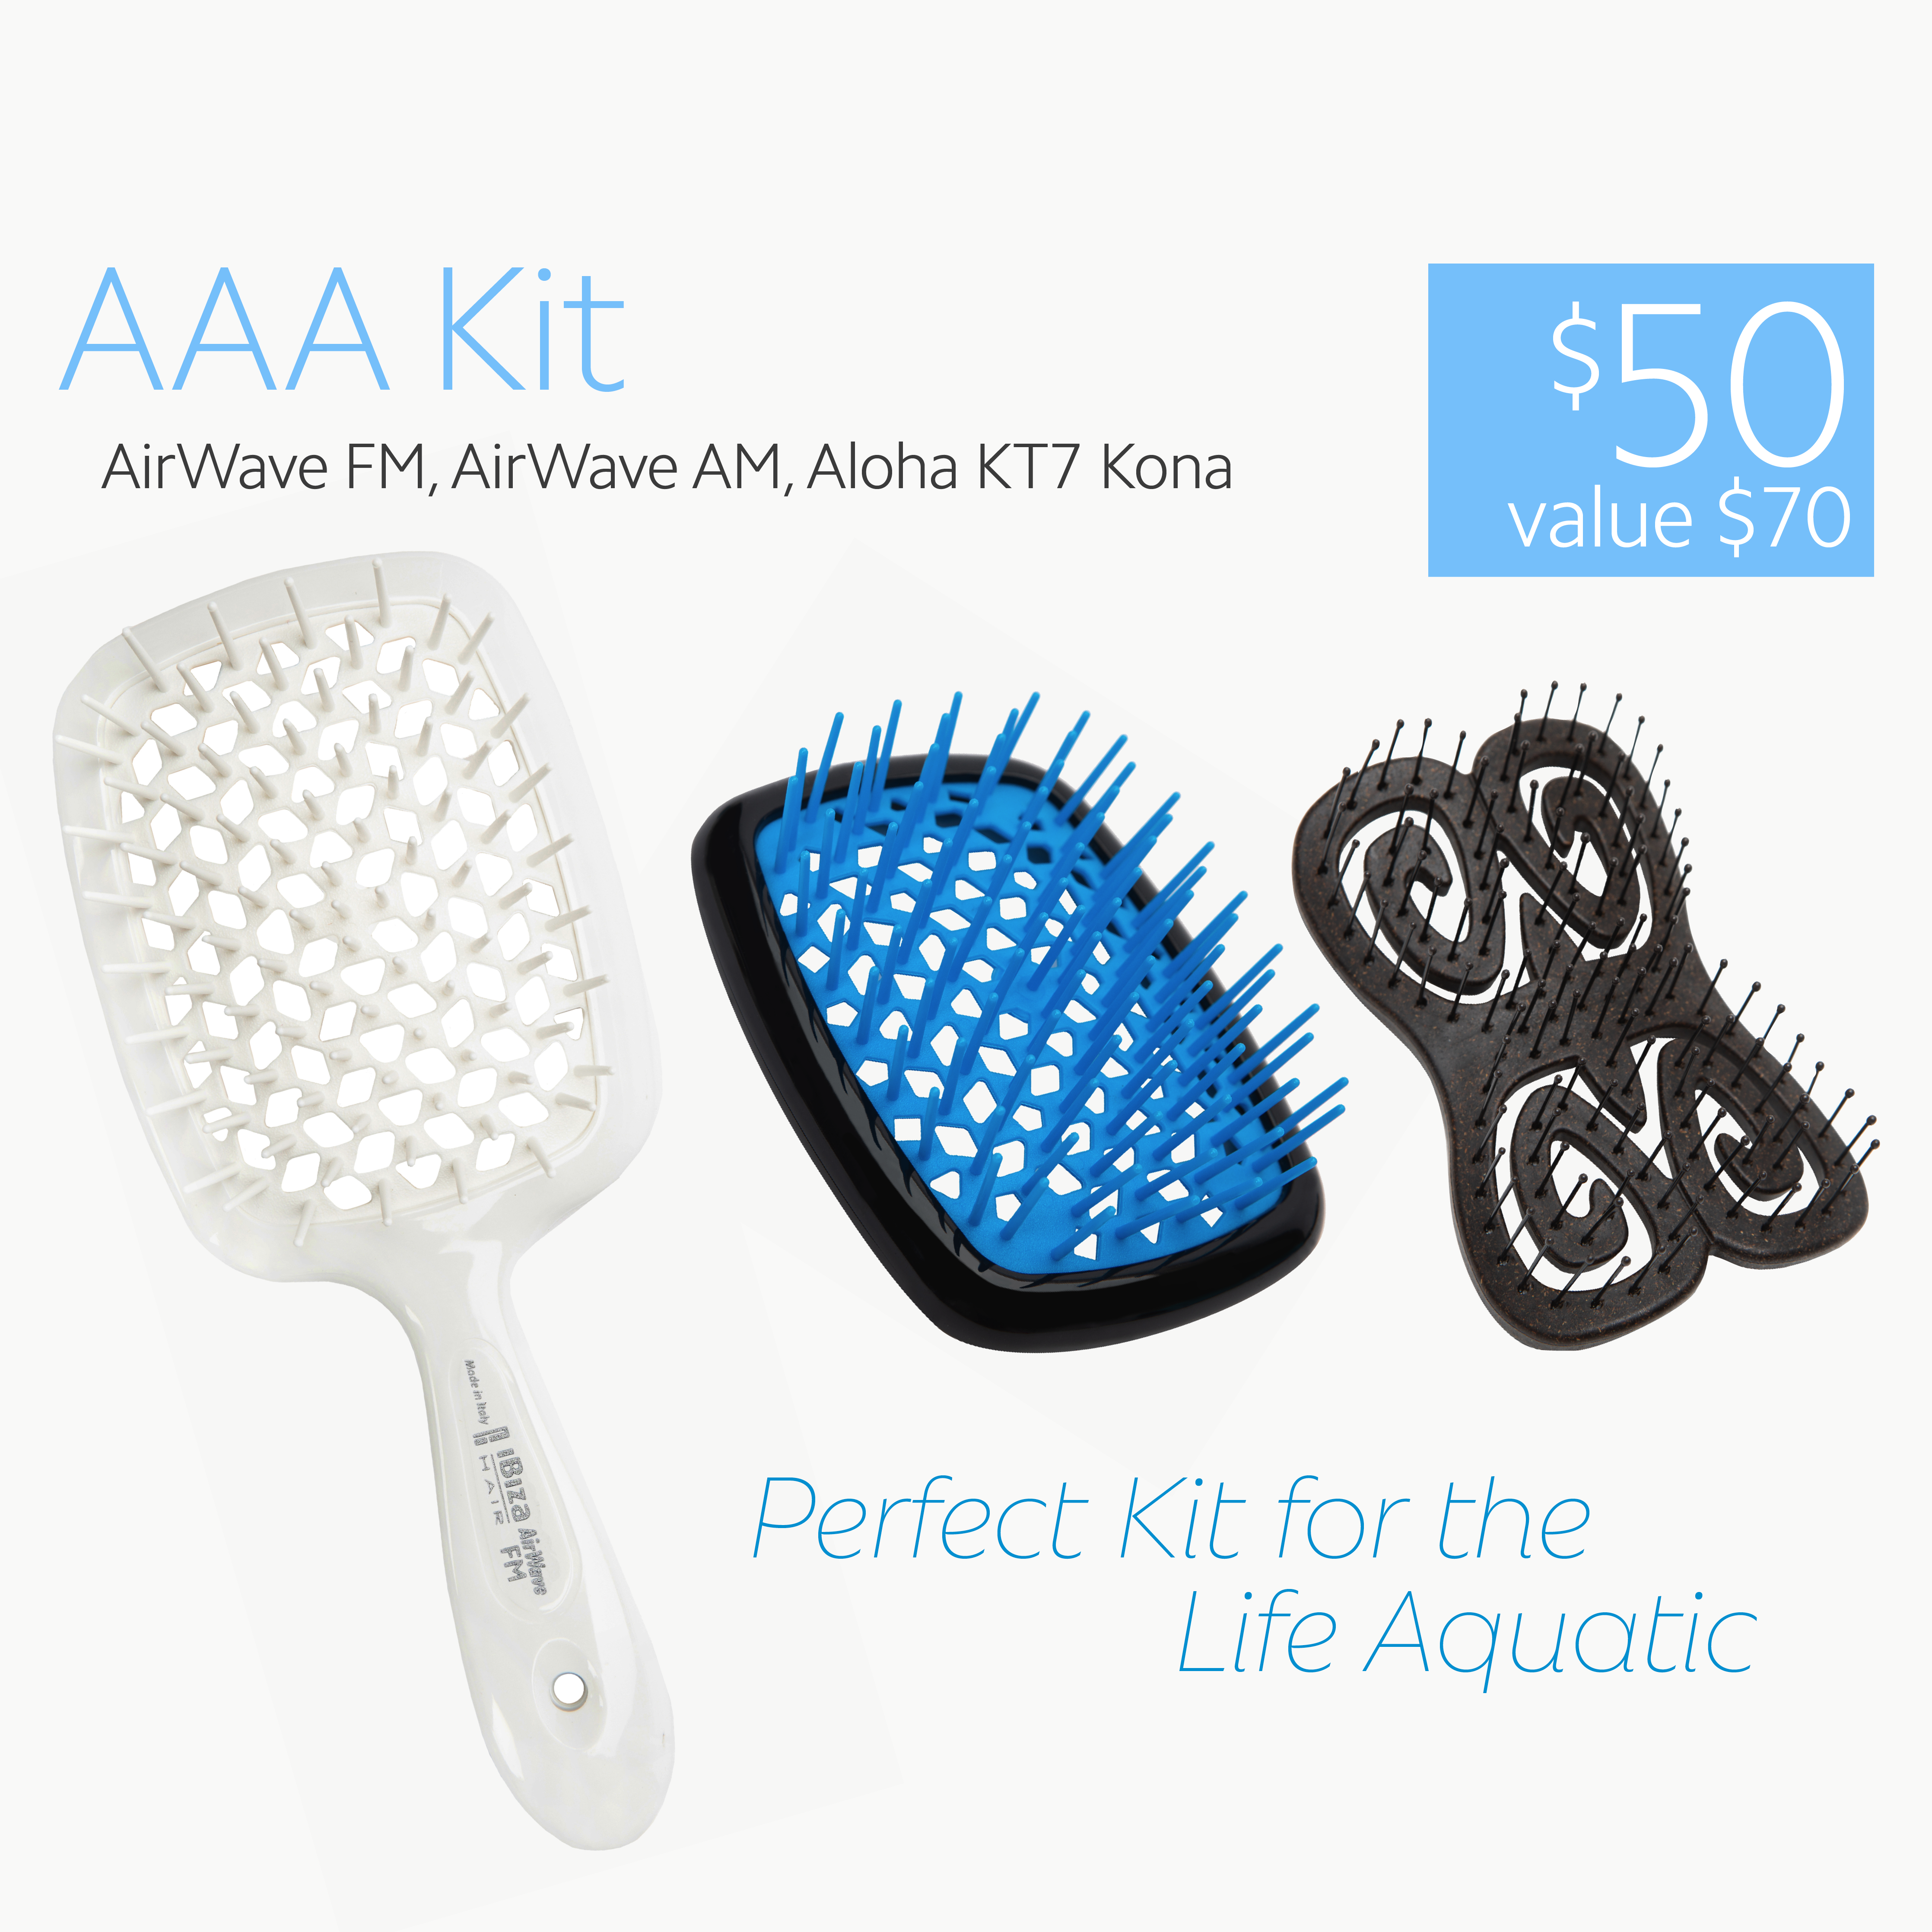 AAA Kit